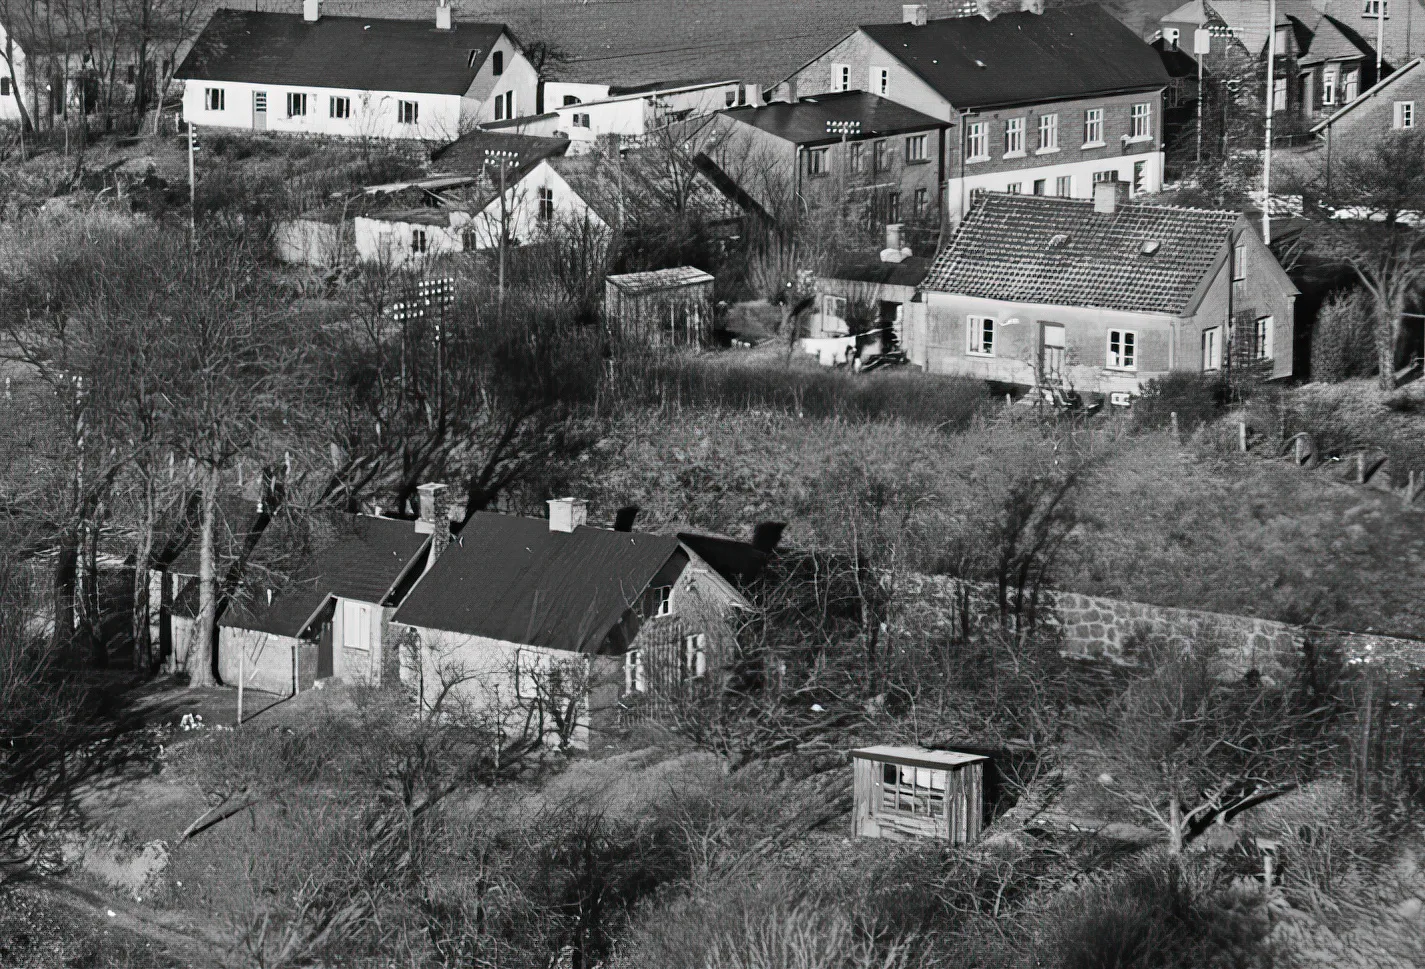 Billede af Ejstrup Holdeplads, som er det tidligere vogterhus i forgrunden.